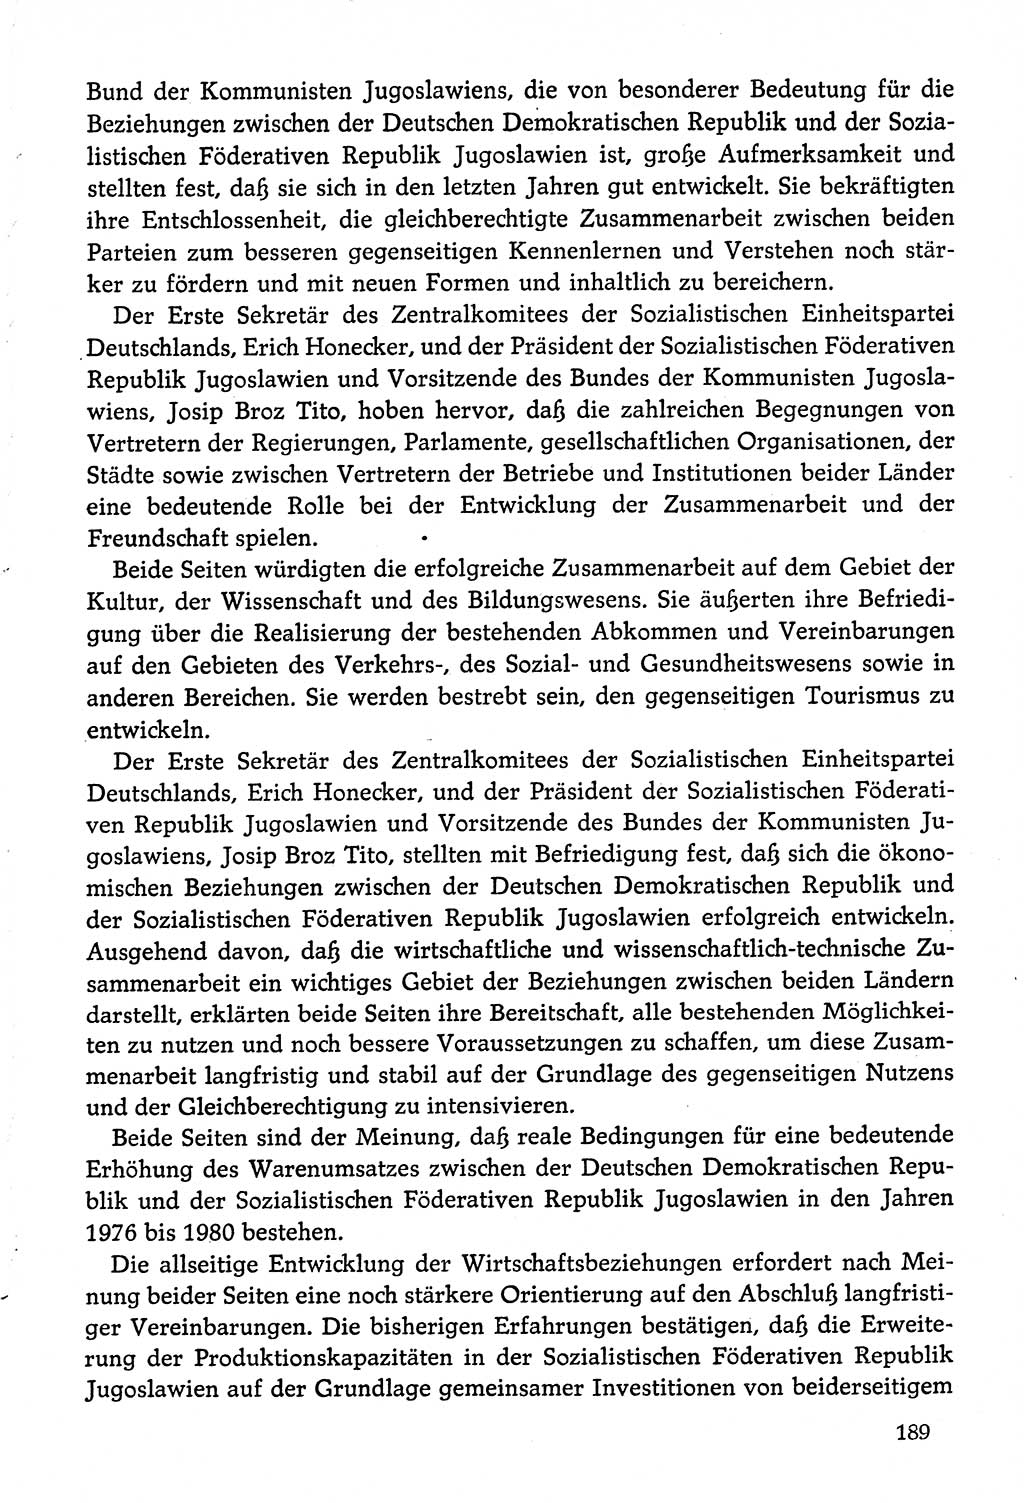 Dokumente der Sozialistischen Einheitspartei Deutschlands (SED) [Deutsche Demokratische Republik (DDR)] 1974-1975, Seite 189 (Dok. SED DDR 1978, Bd. ⅩⅤ, S. 189)